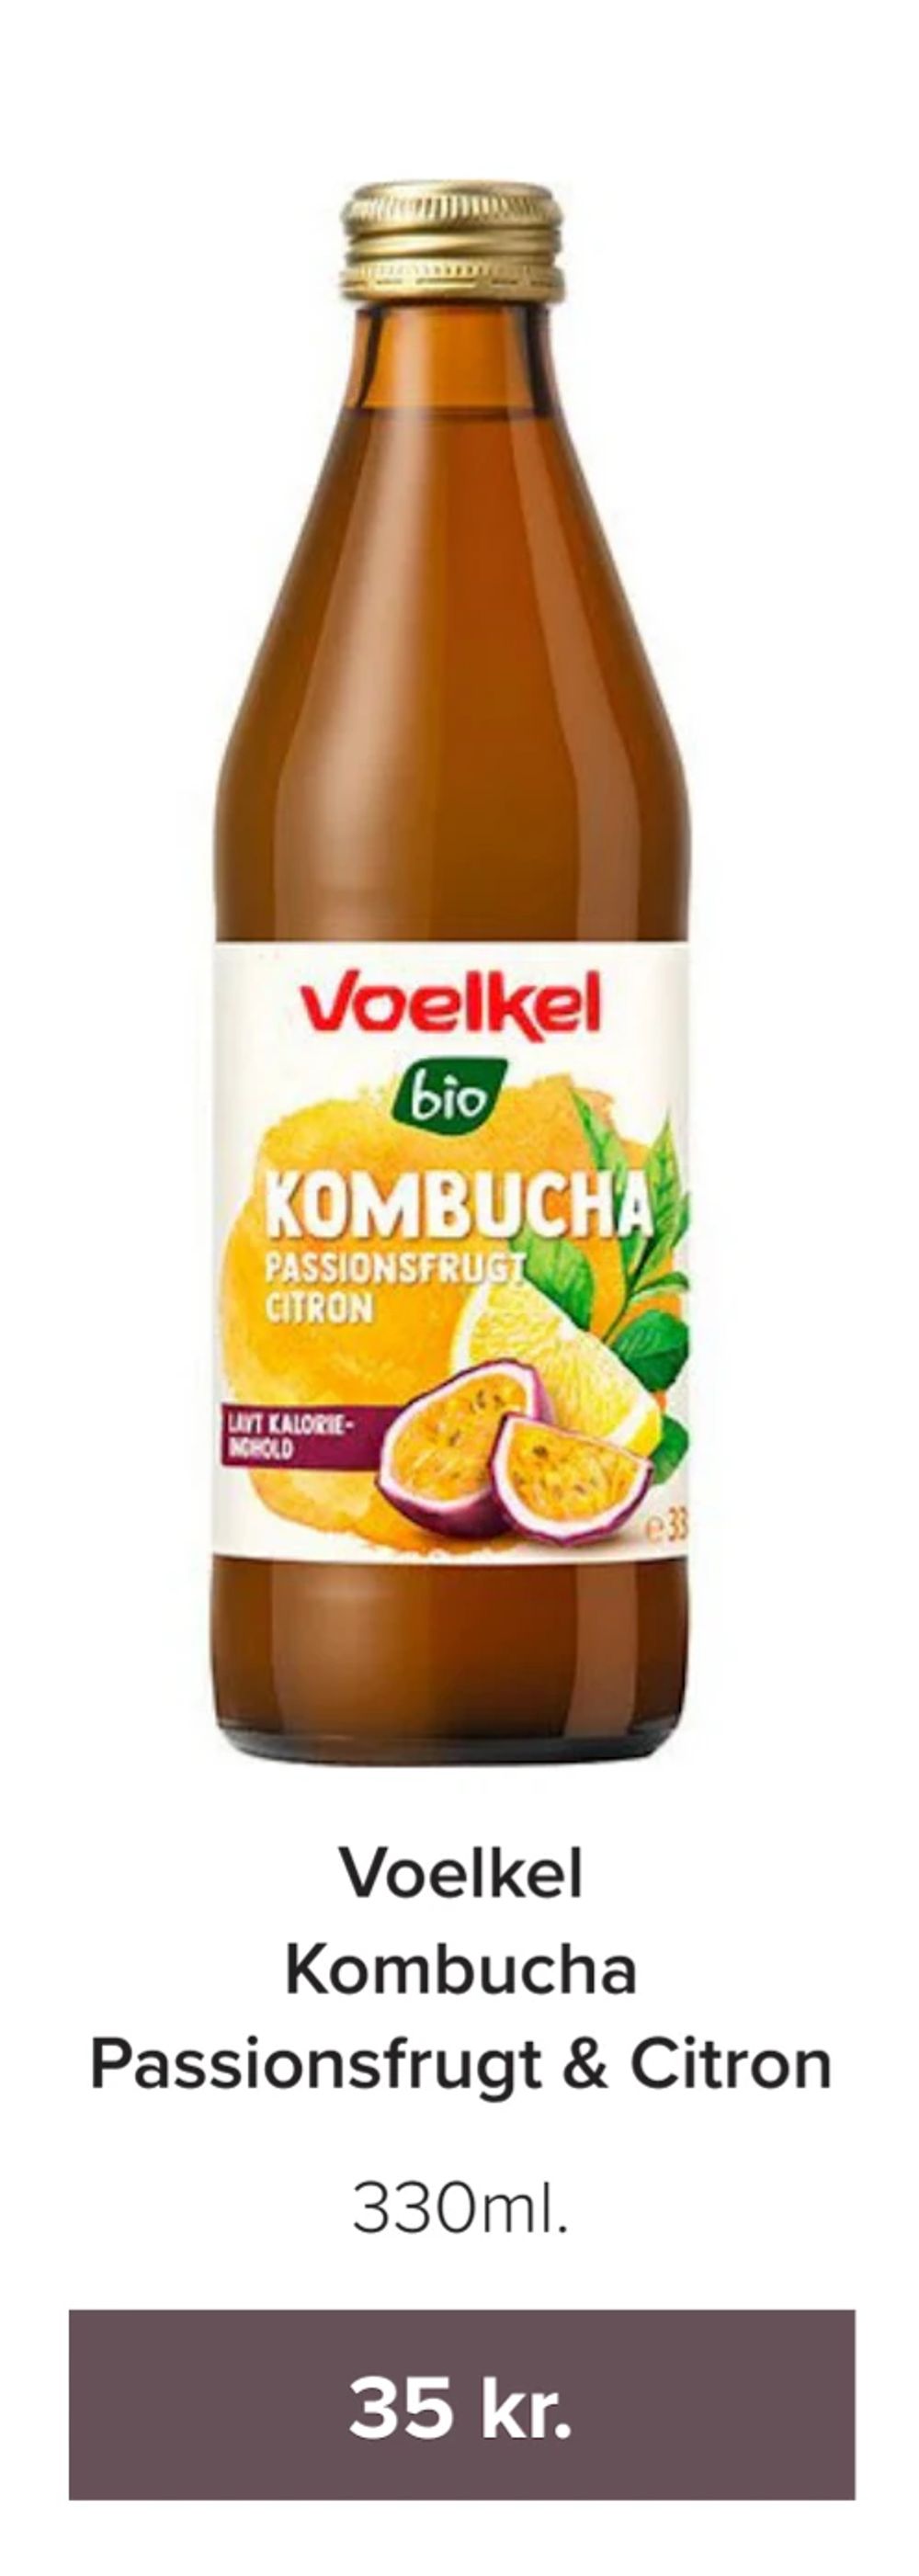 Tilbud på Voelkel Kombucha Passionsfrugt & Citron fra Helsemin til 35 kr.